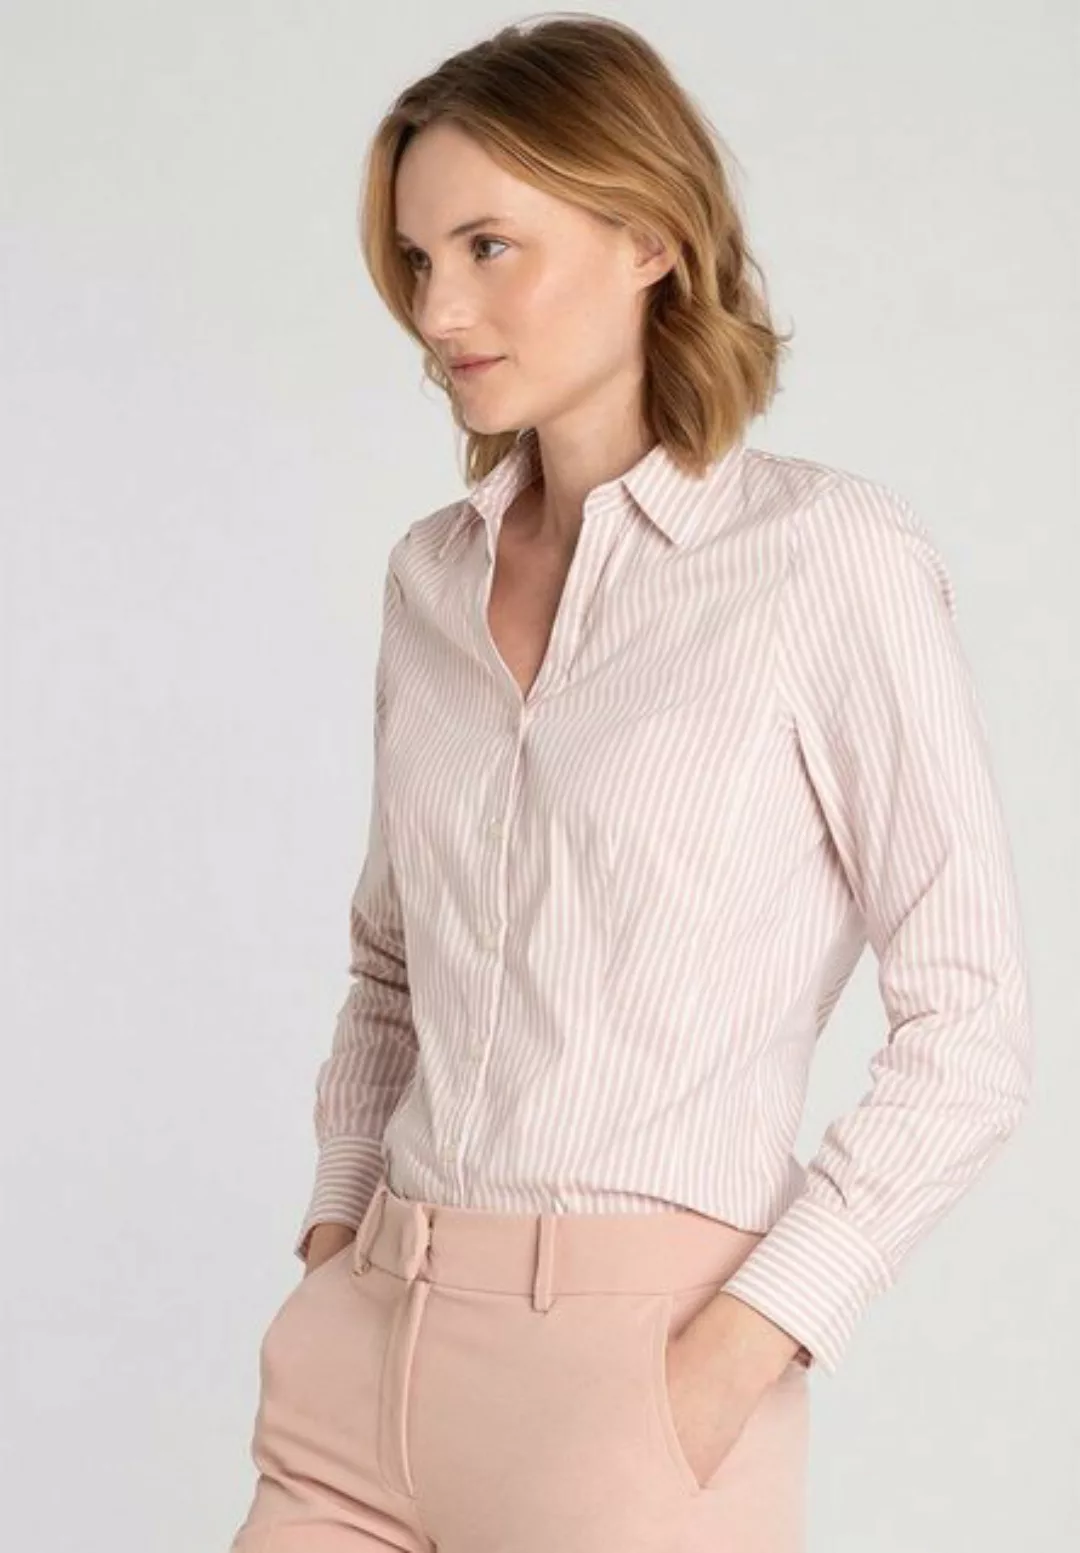 Hemdbluse mit Streifen, rosa/weiß, Frühjahrs-Kollektion günstig online kaufen